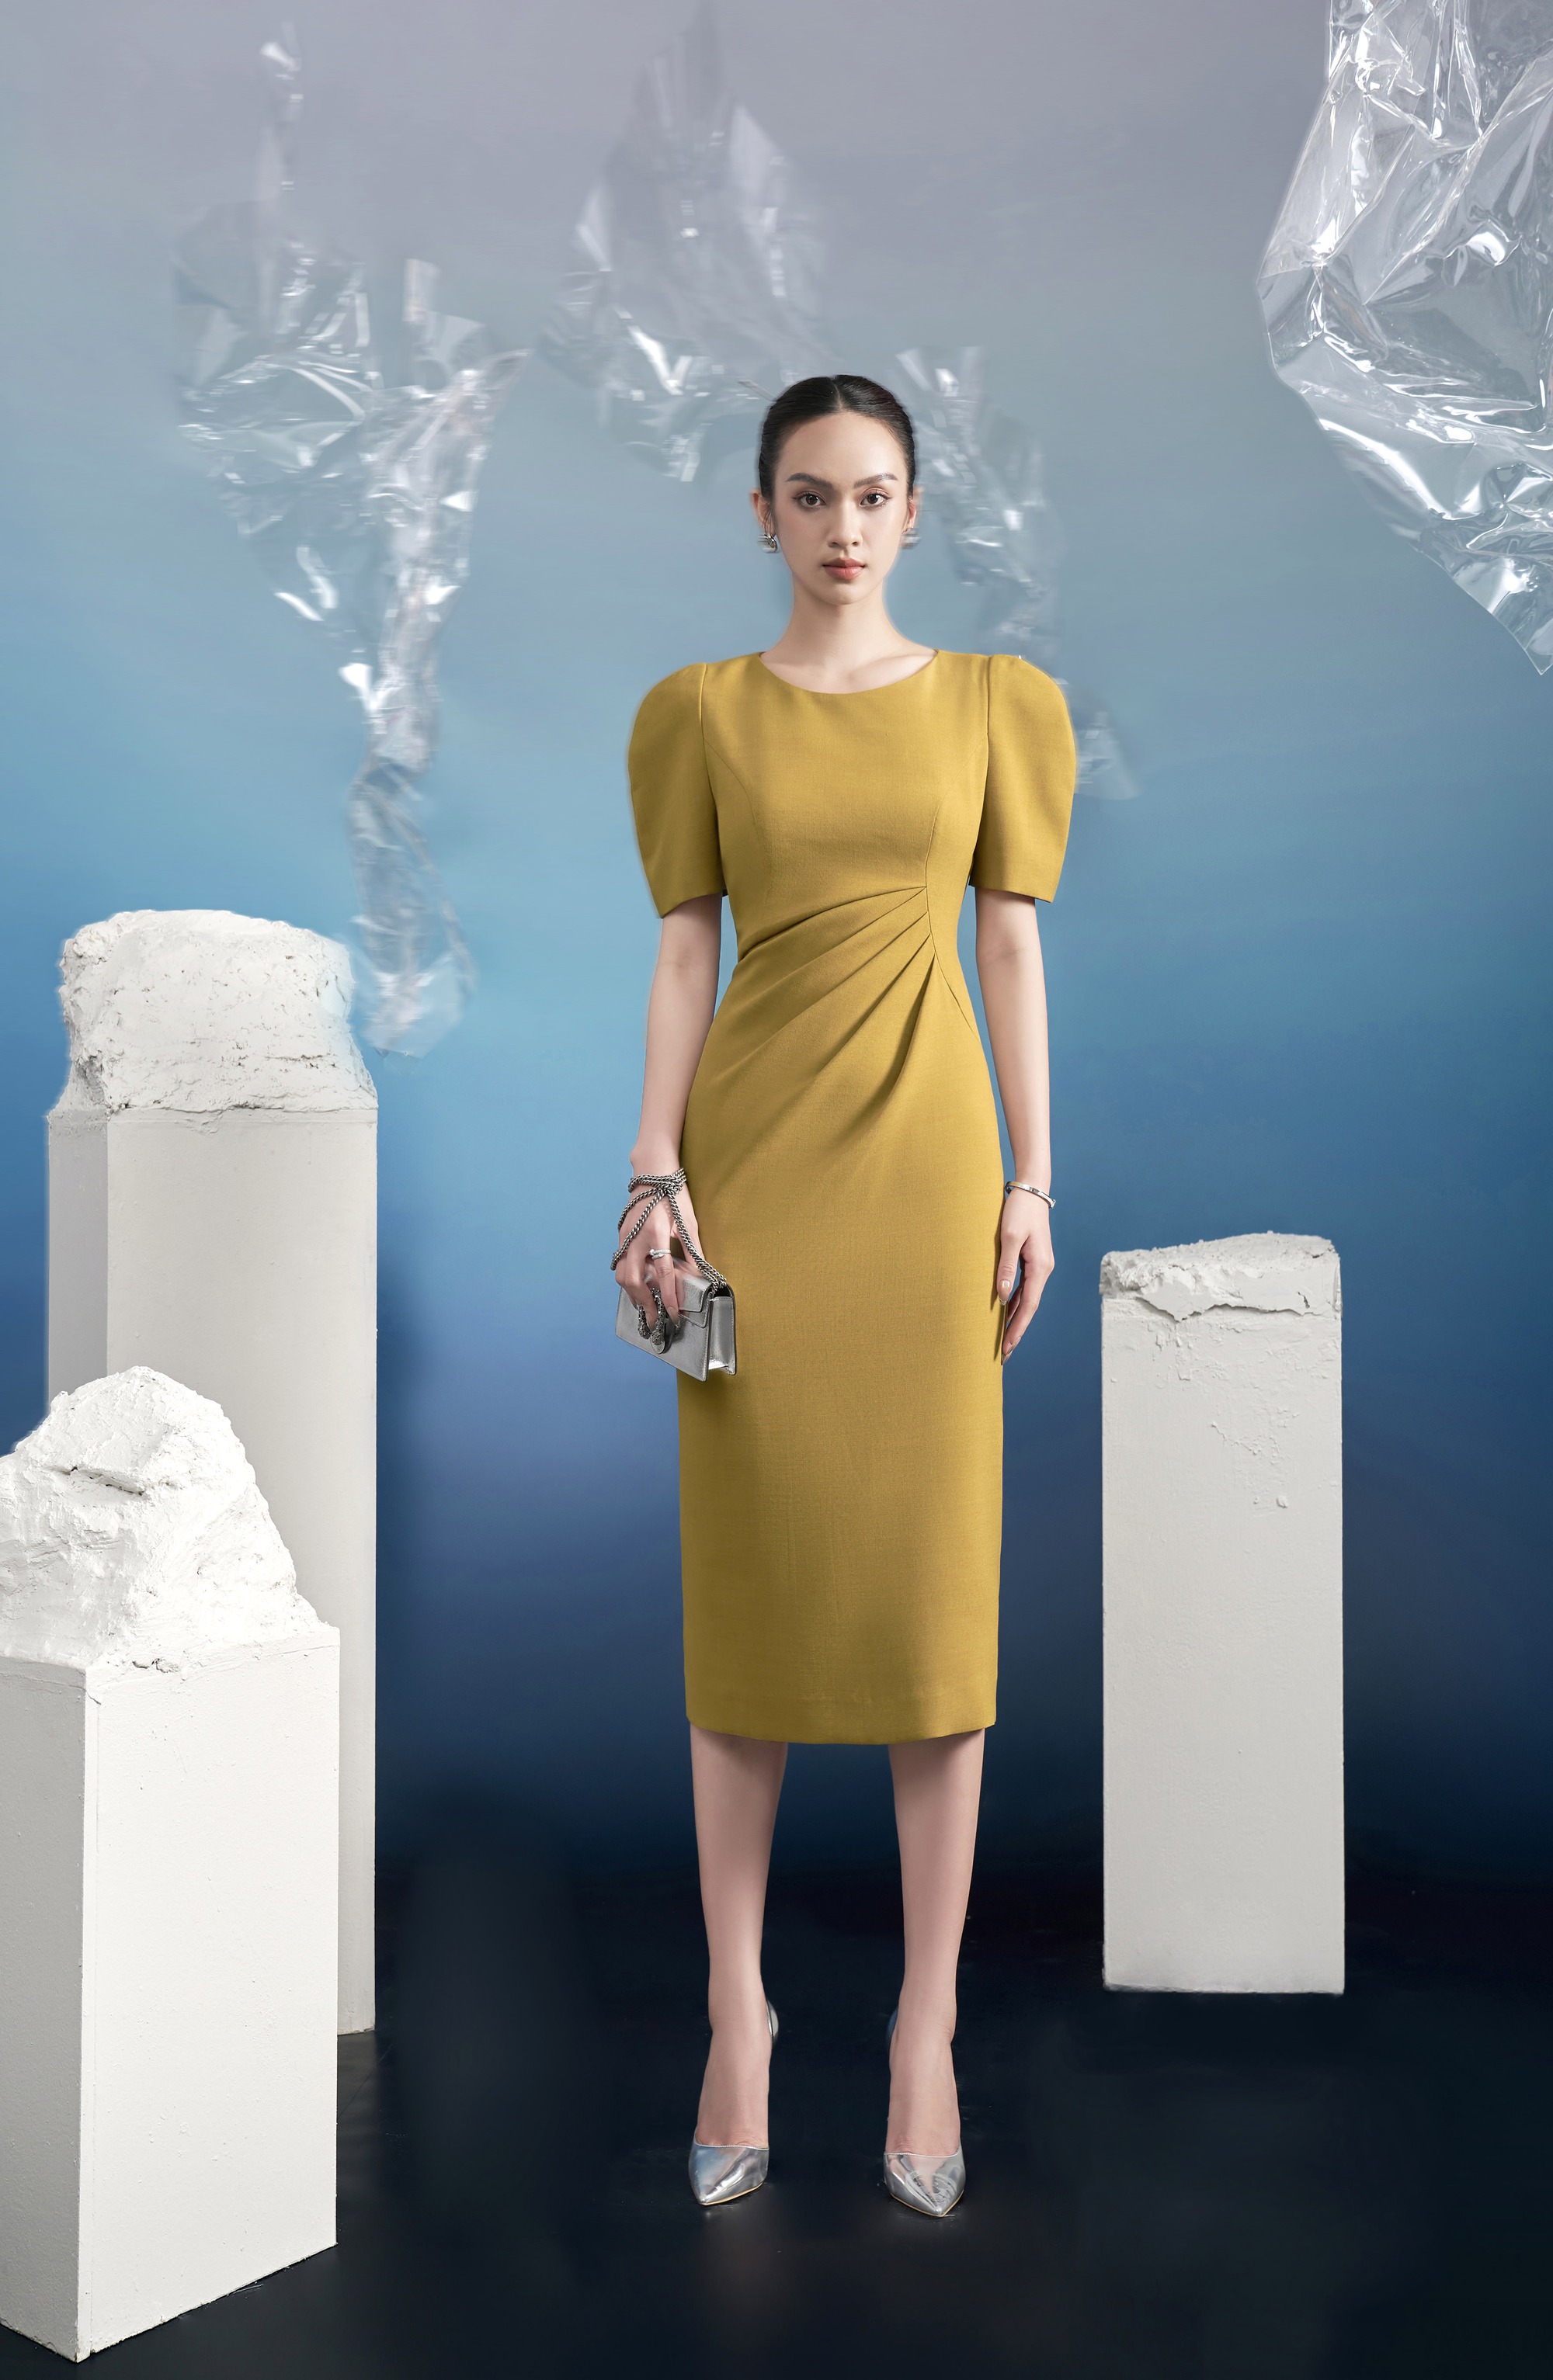 Tổng hợp các kiểu váy đầm mới và hot nhất 2022 không thể bỏ lỡ